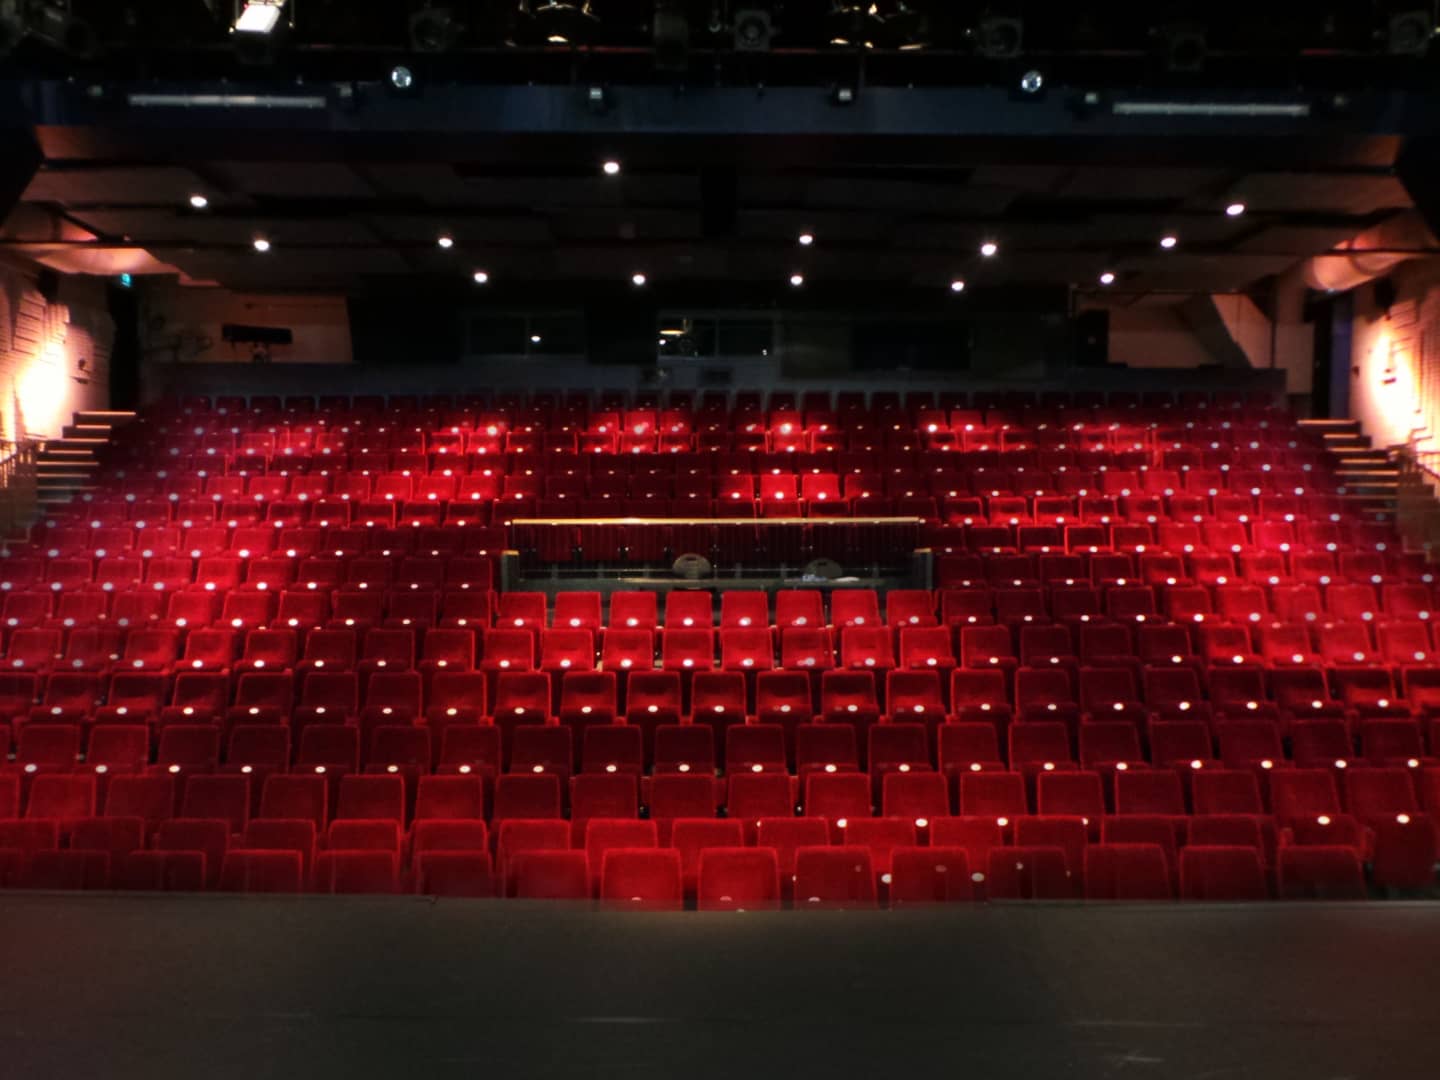 grote zaal met rode pluche stoelen van WestlandTheater de naald in het westland